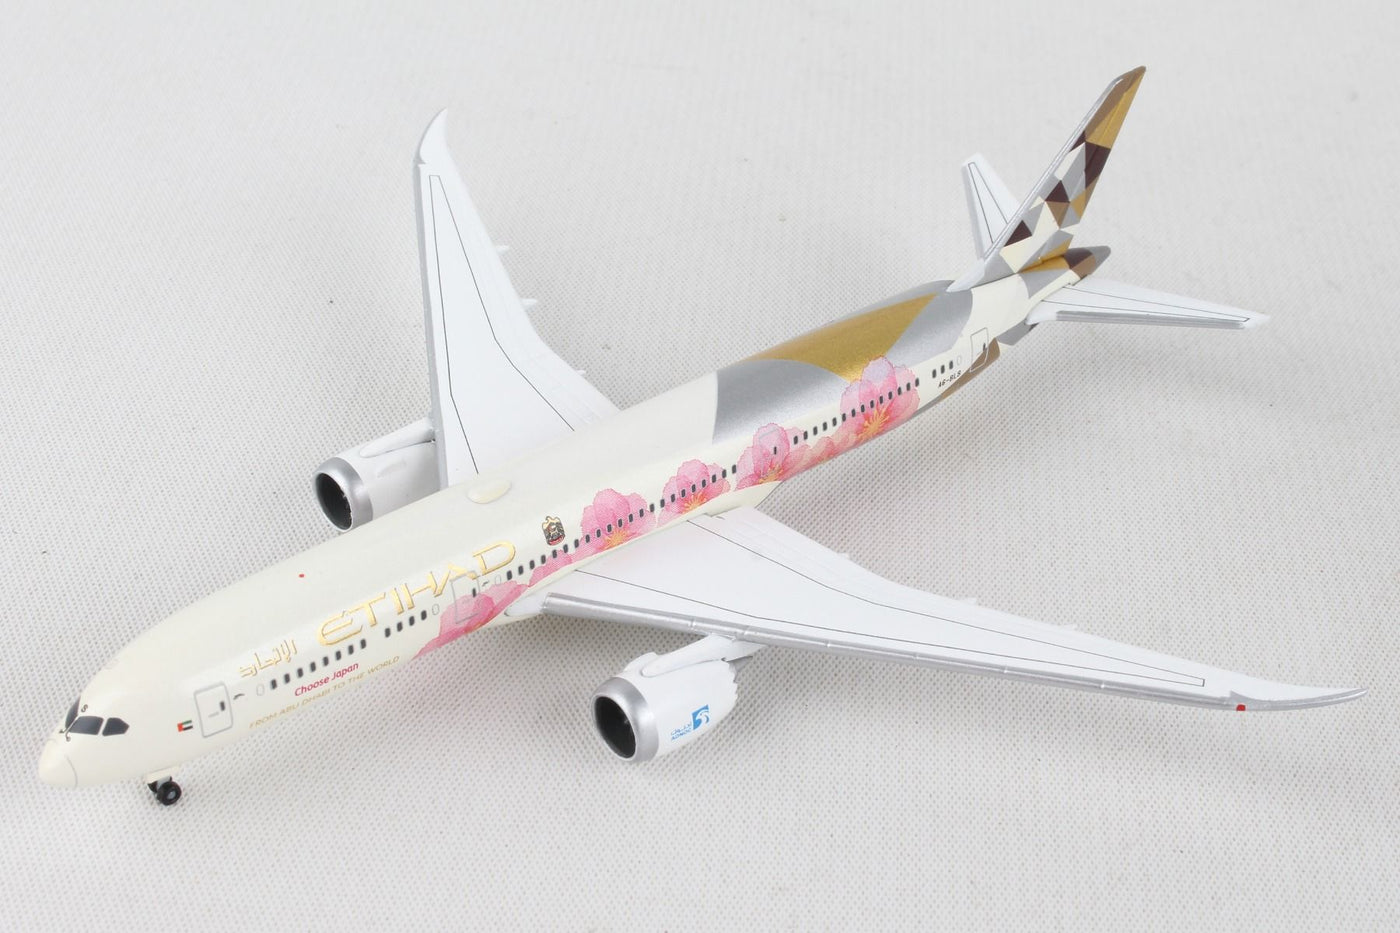 1/500 Etihad Airways Boeing 7879 Dreamliner   Choose Japan